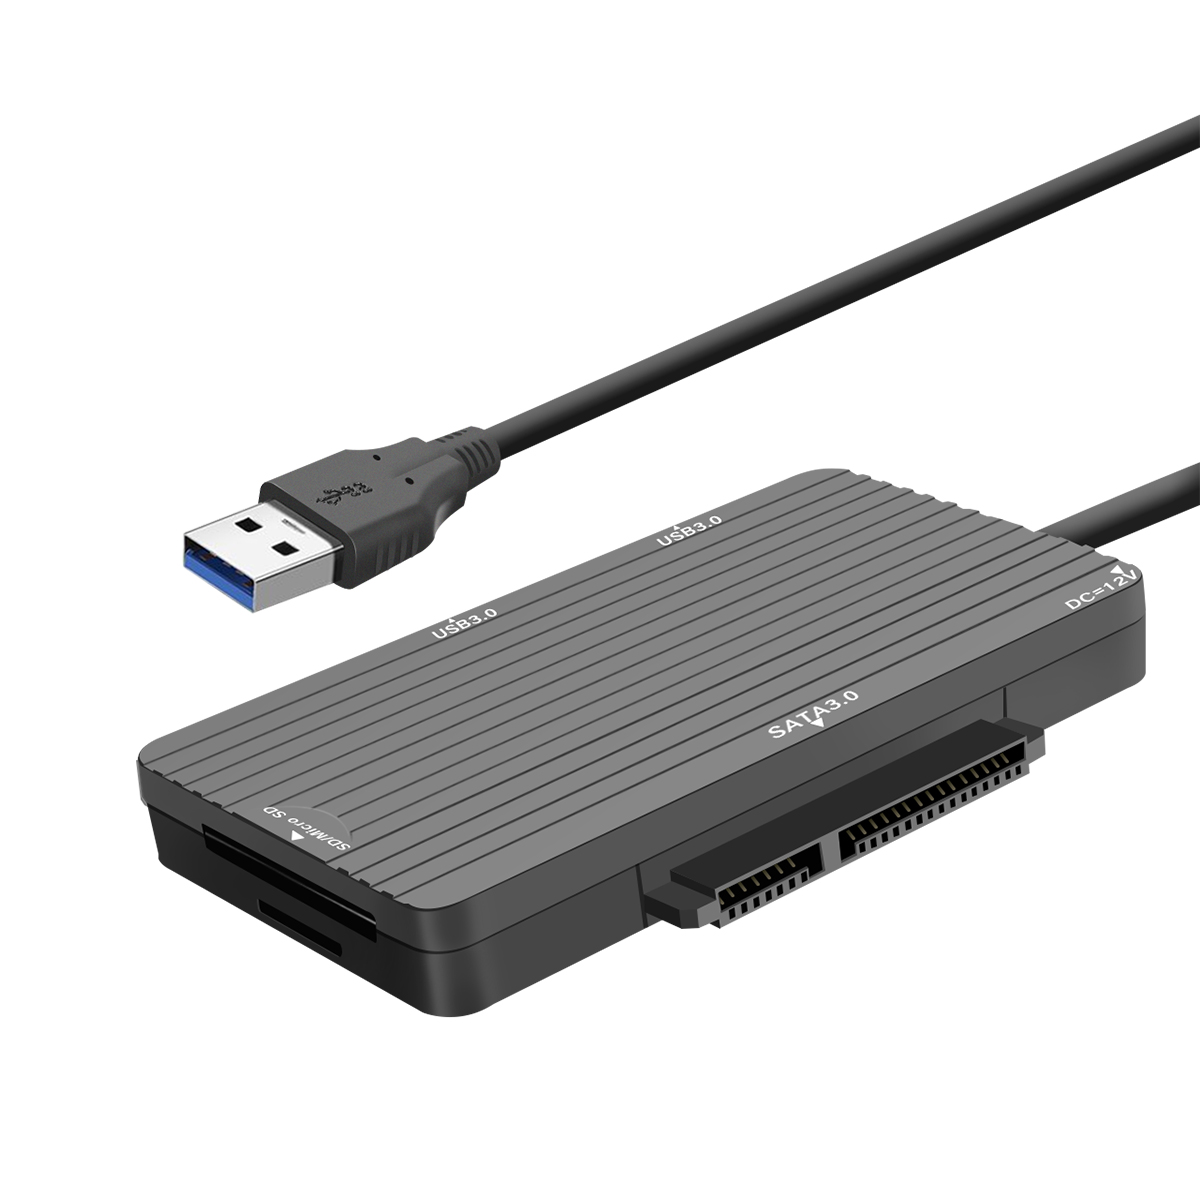 Find ELEGIANT USB3.0/SATA3.0 Converter 2.5